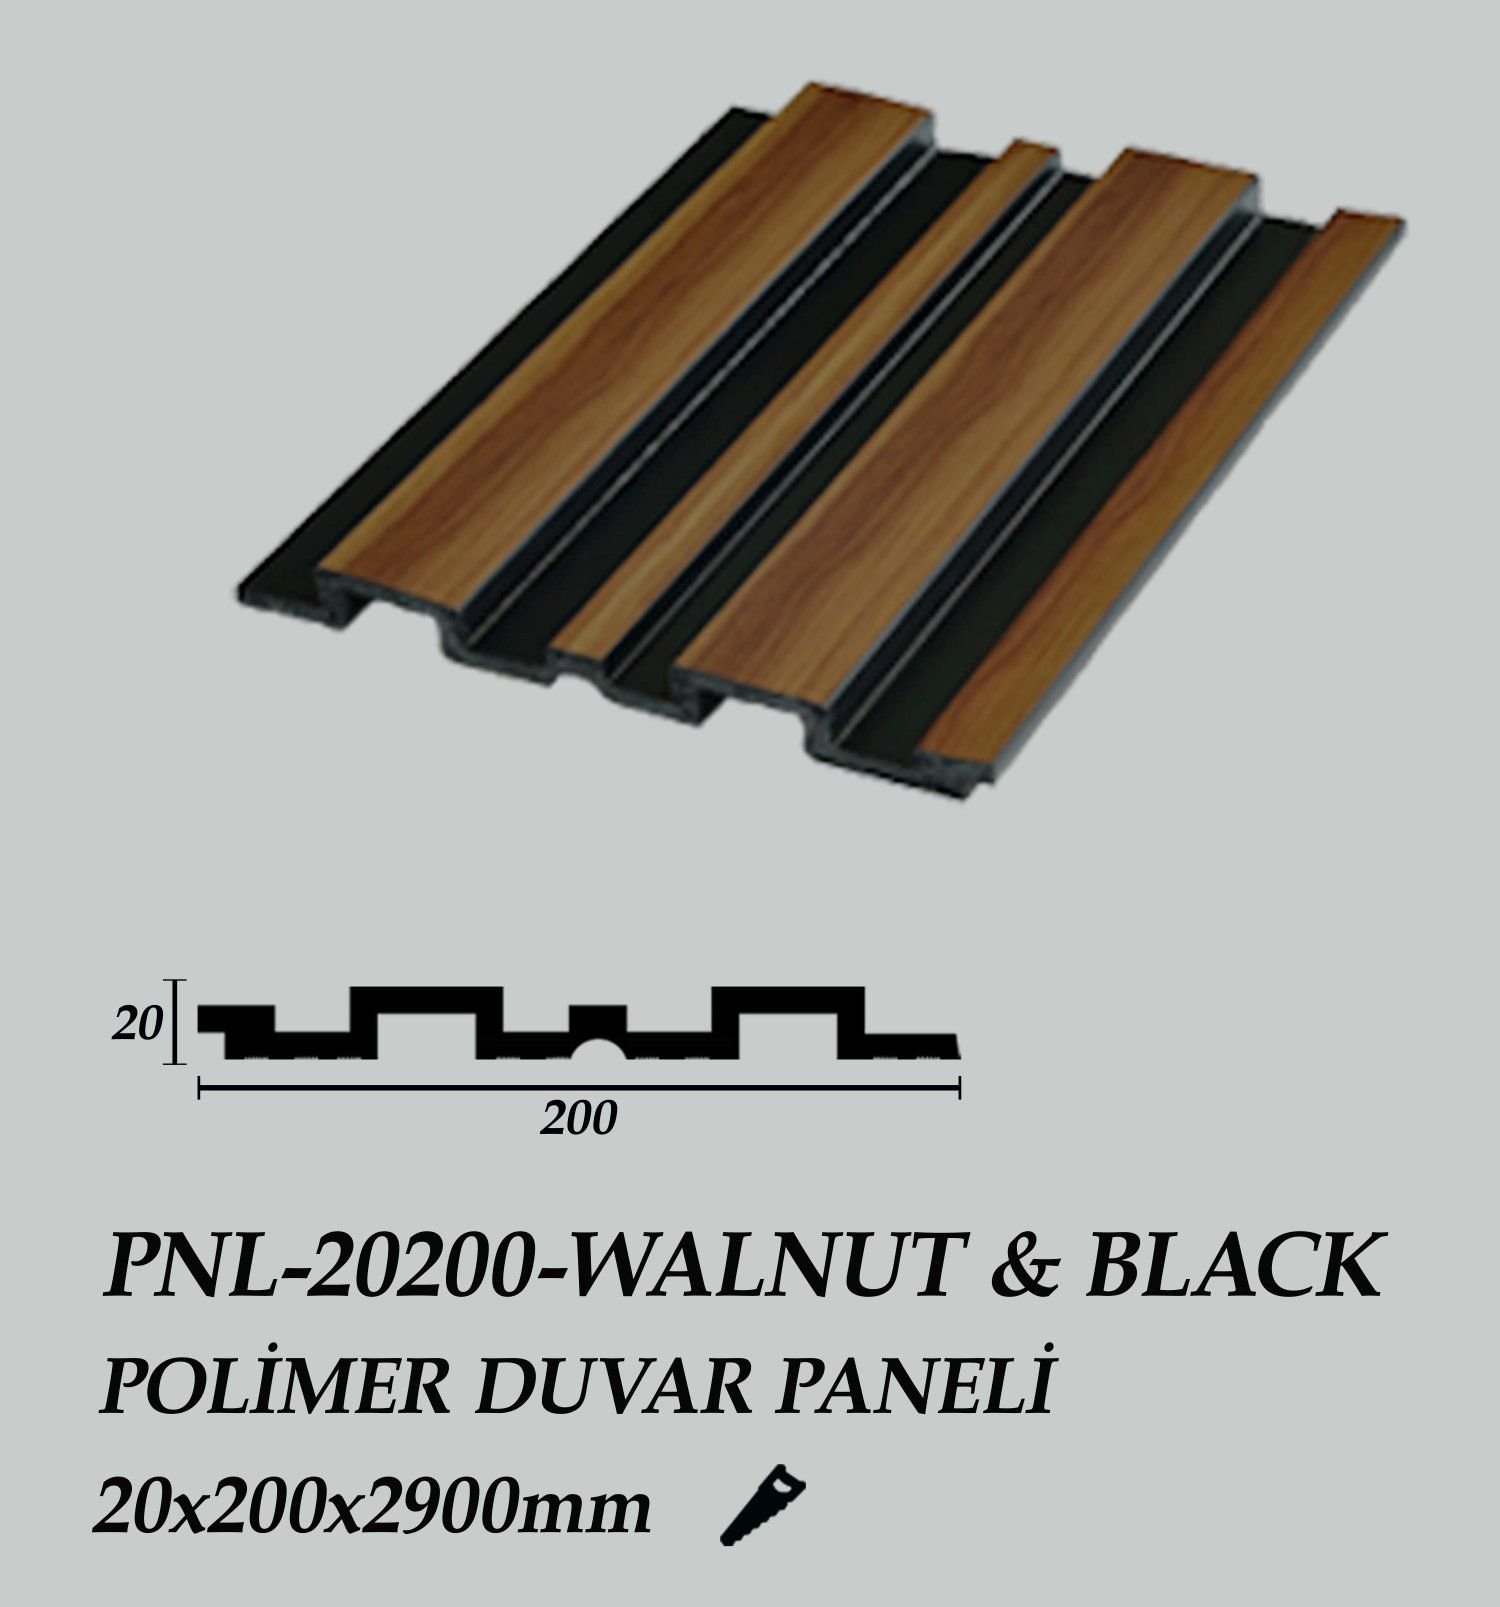 PNL-20200-WALNUT&BLACK Polimer Duvar Paneli 20X200X2900mm